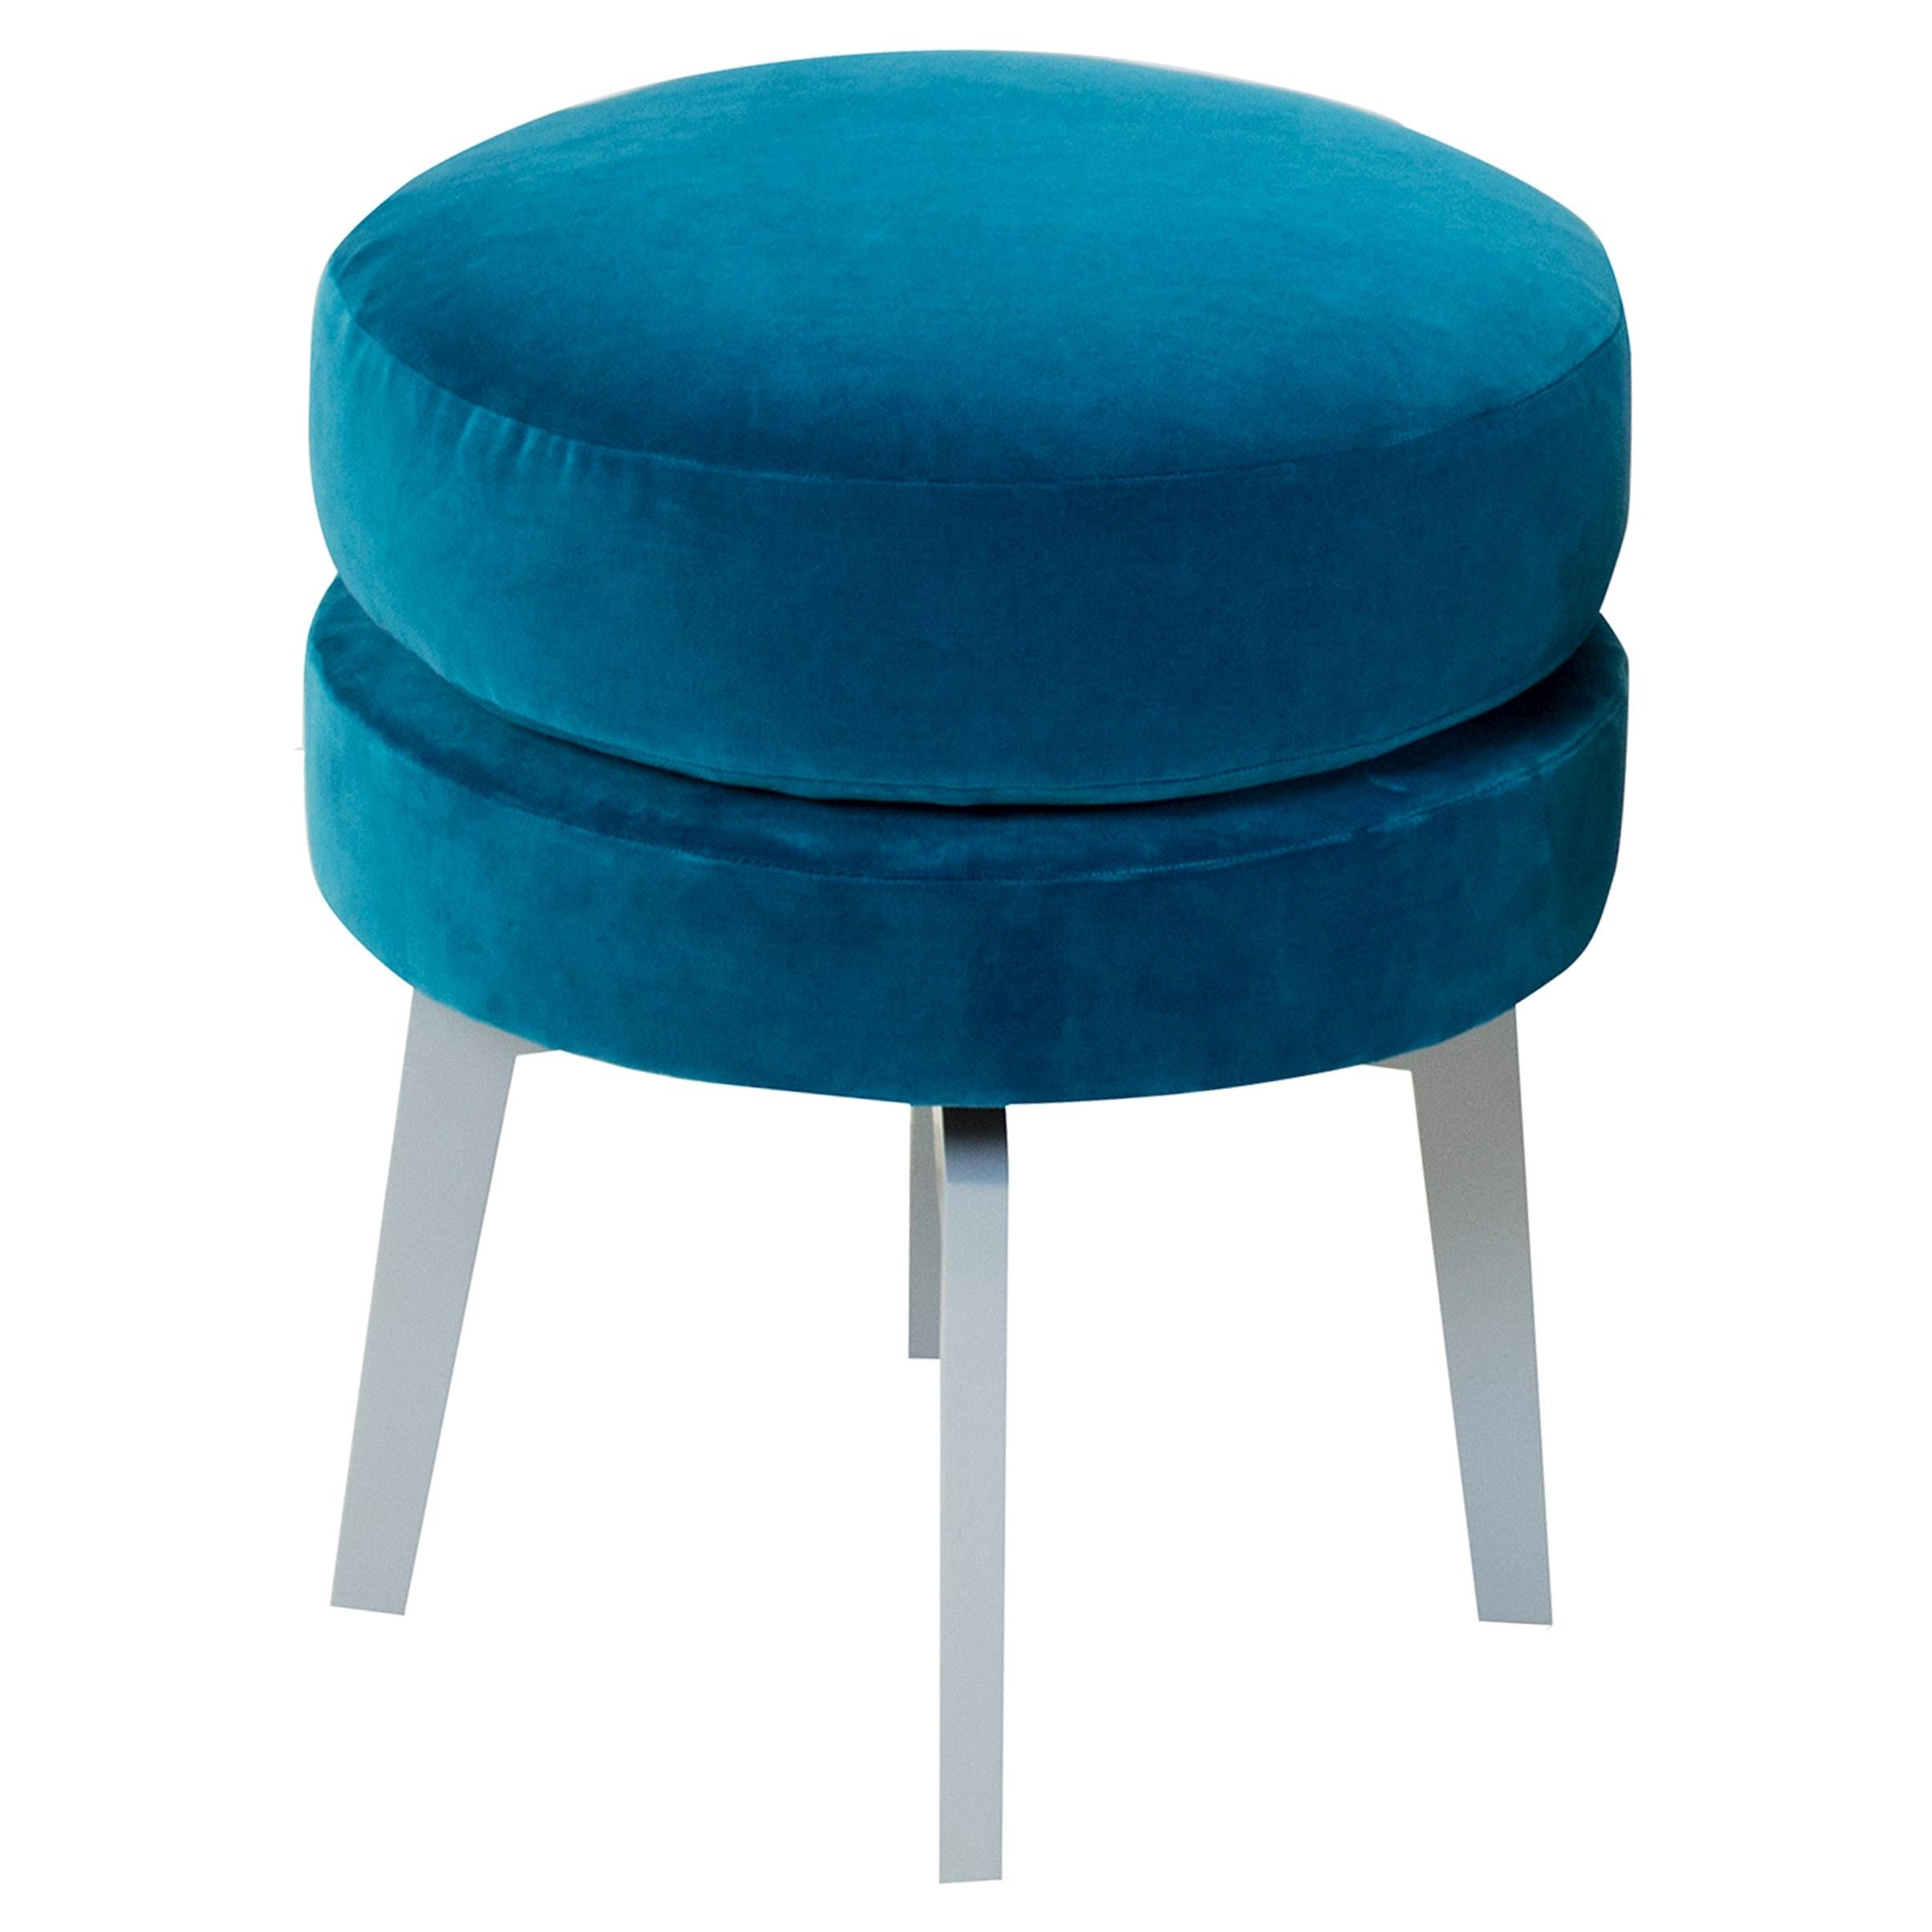 Velvet Blue Teal Upholstered Stool For Sale